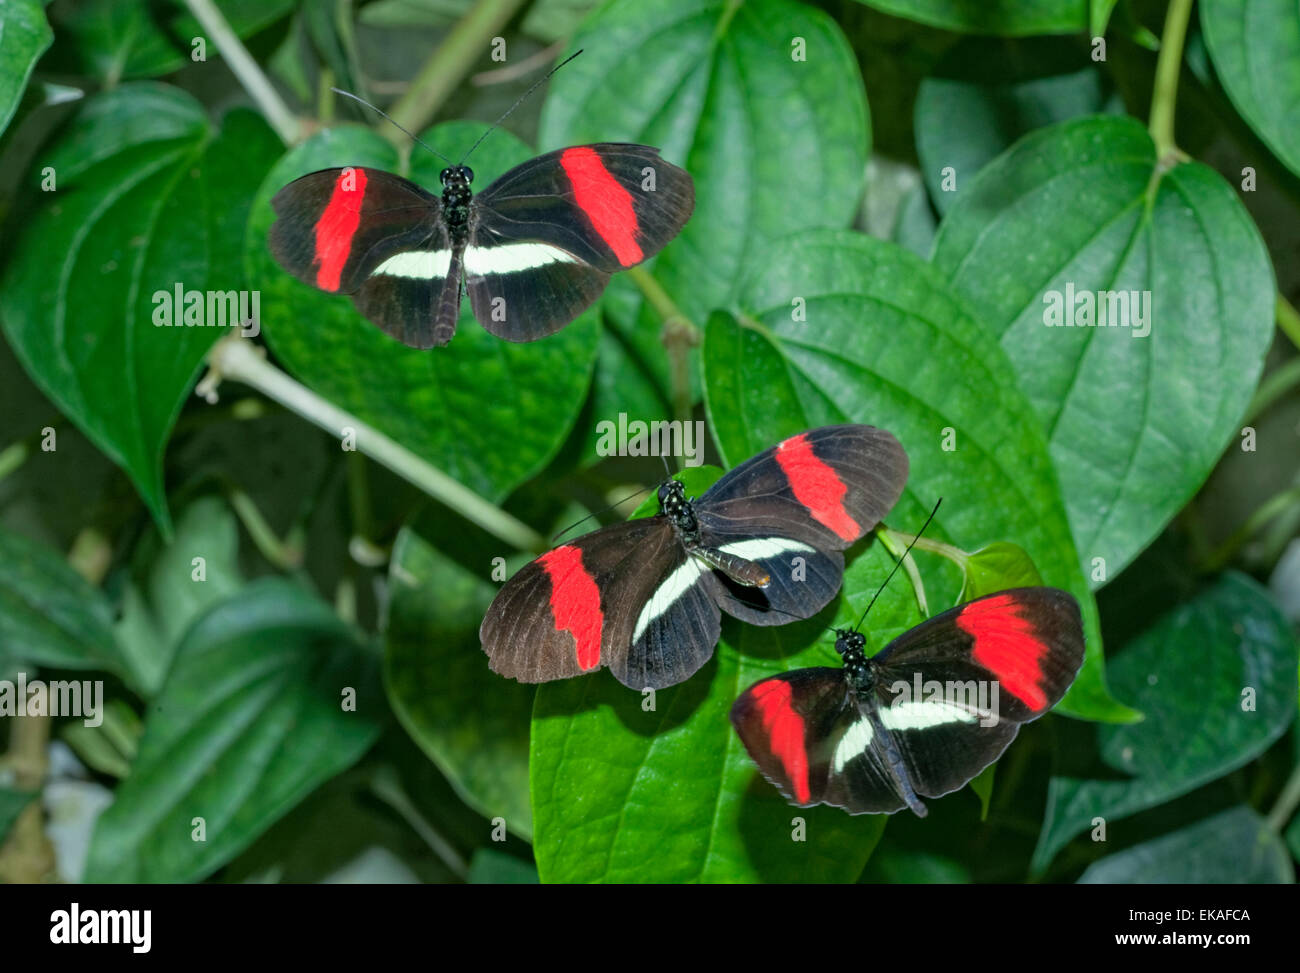 Danse d'accouplement - Postman Postman - commune - Papillons Heliconius melpomene rosina - Amérique Centrale Banque D'Images